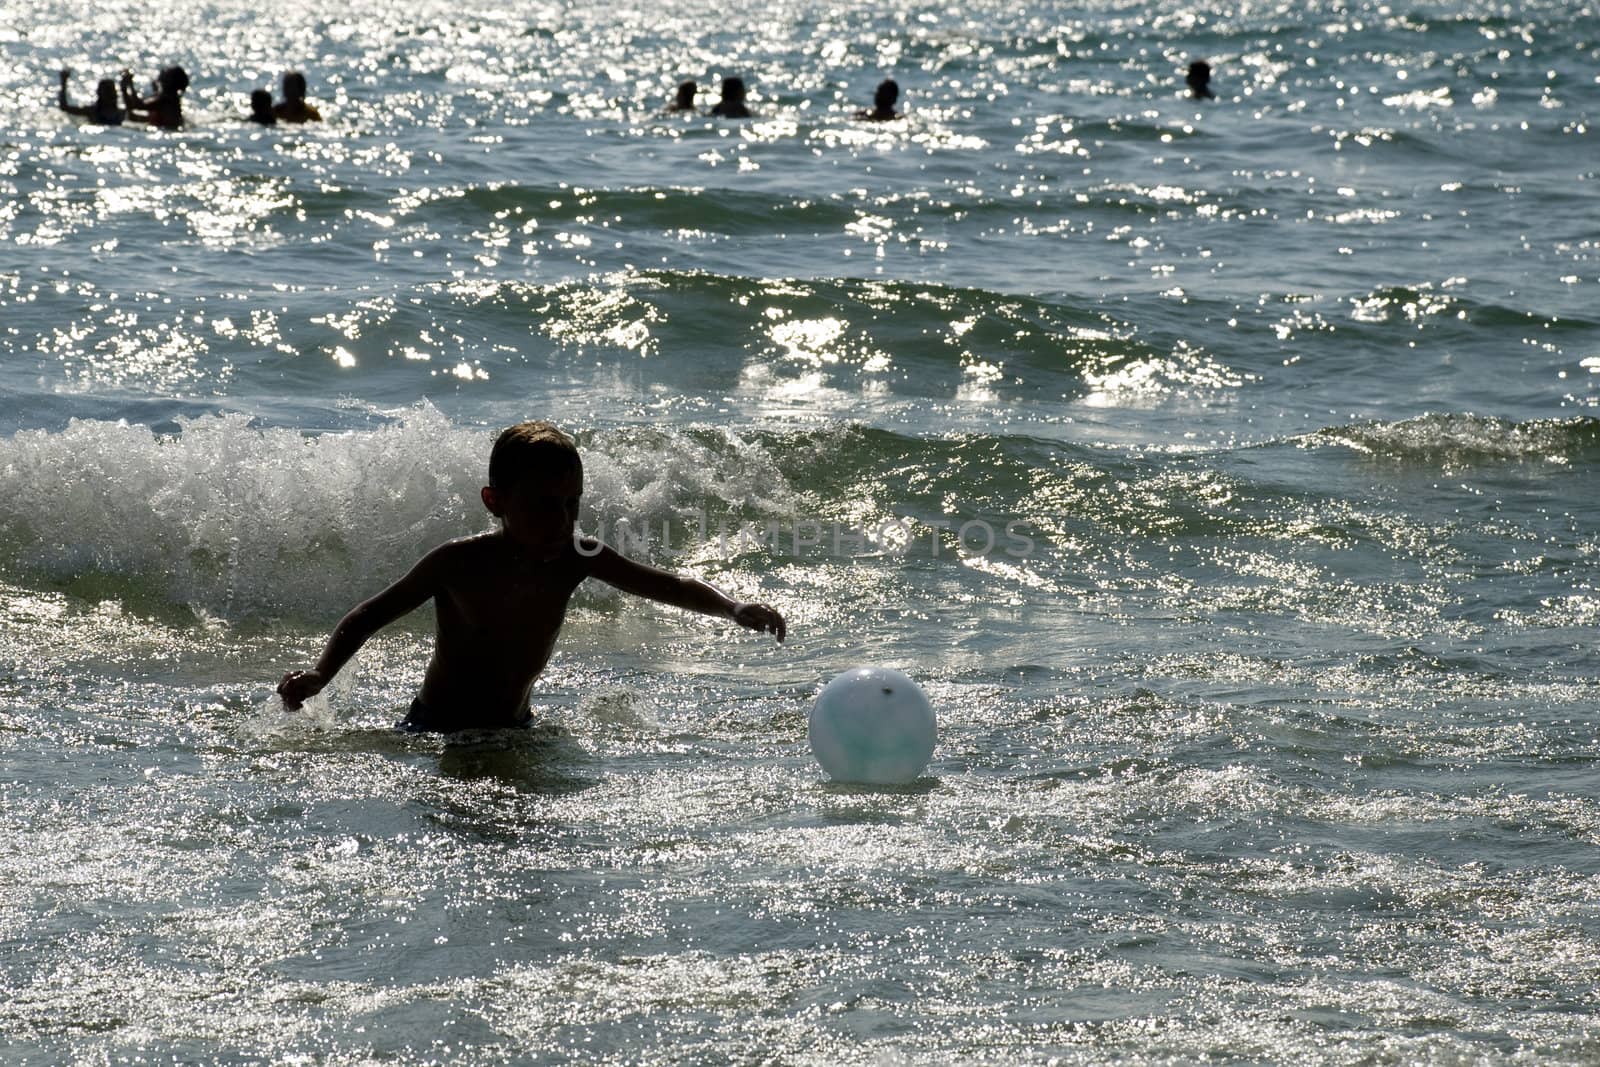 Boy reaching for the beachball through the waves.